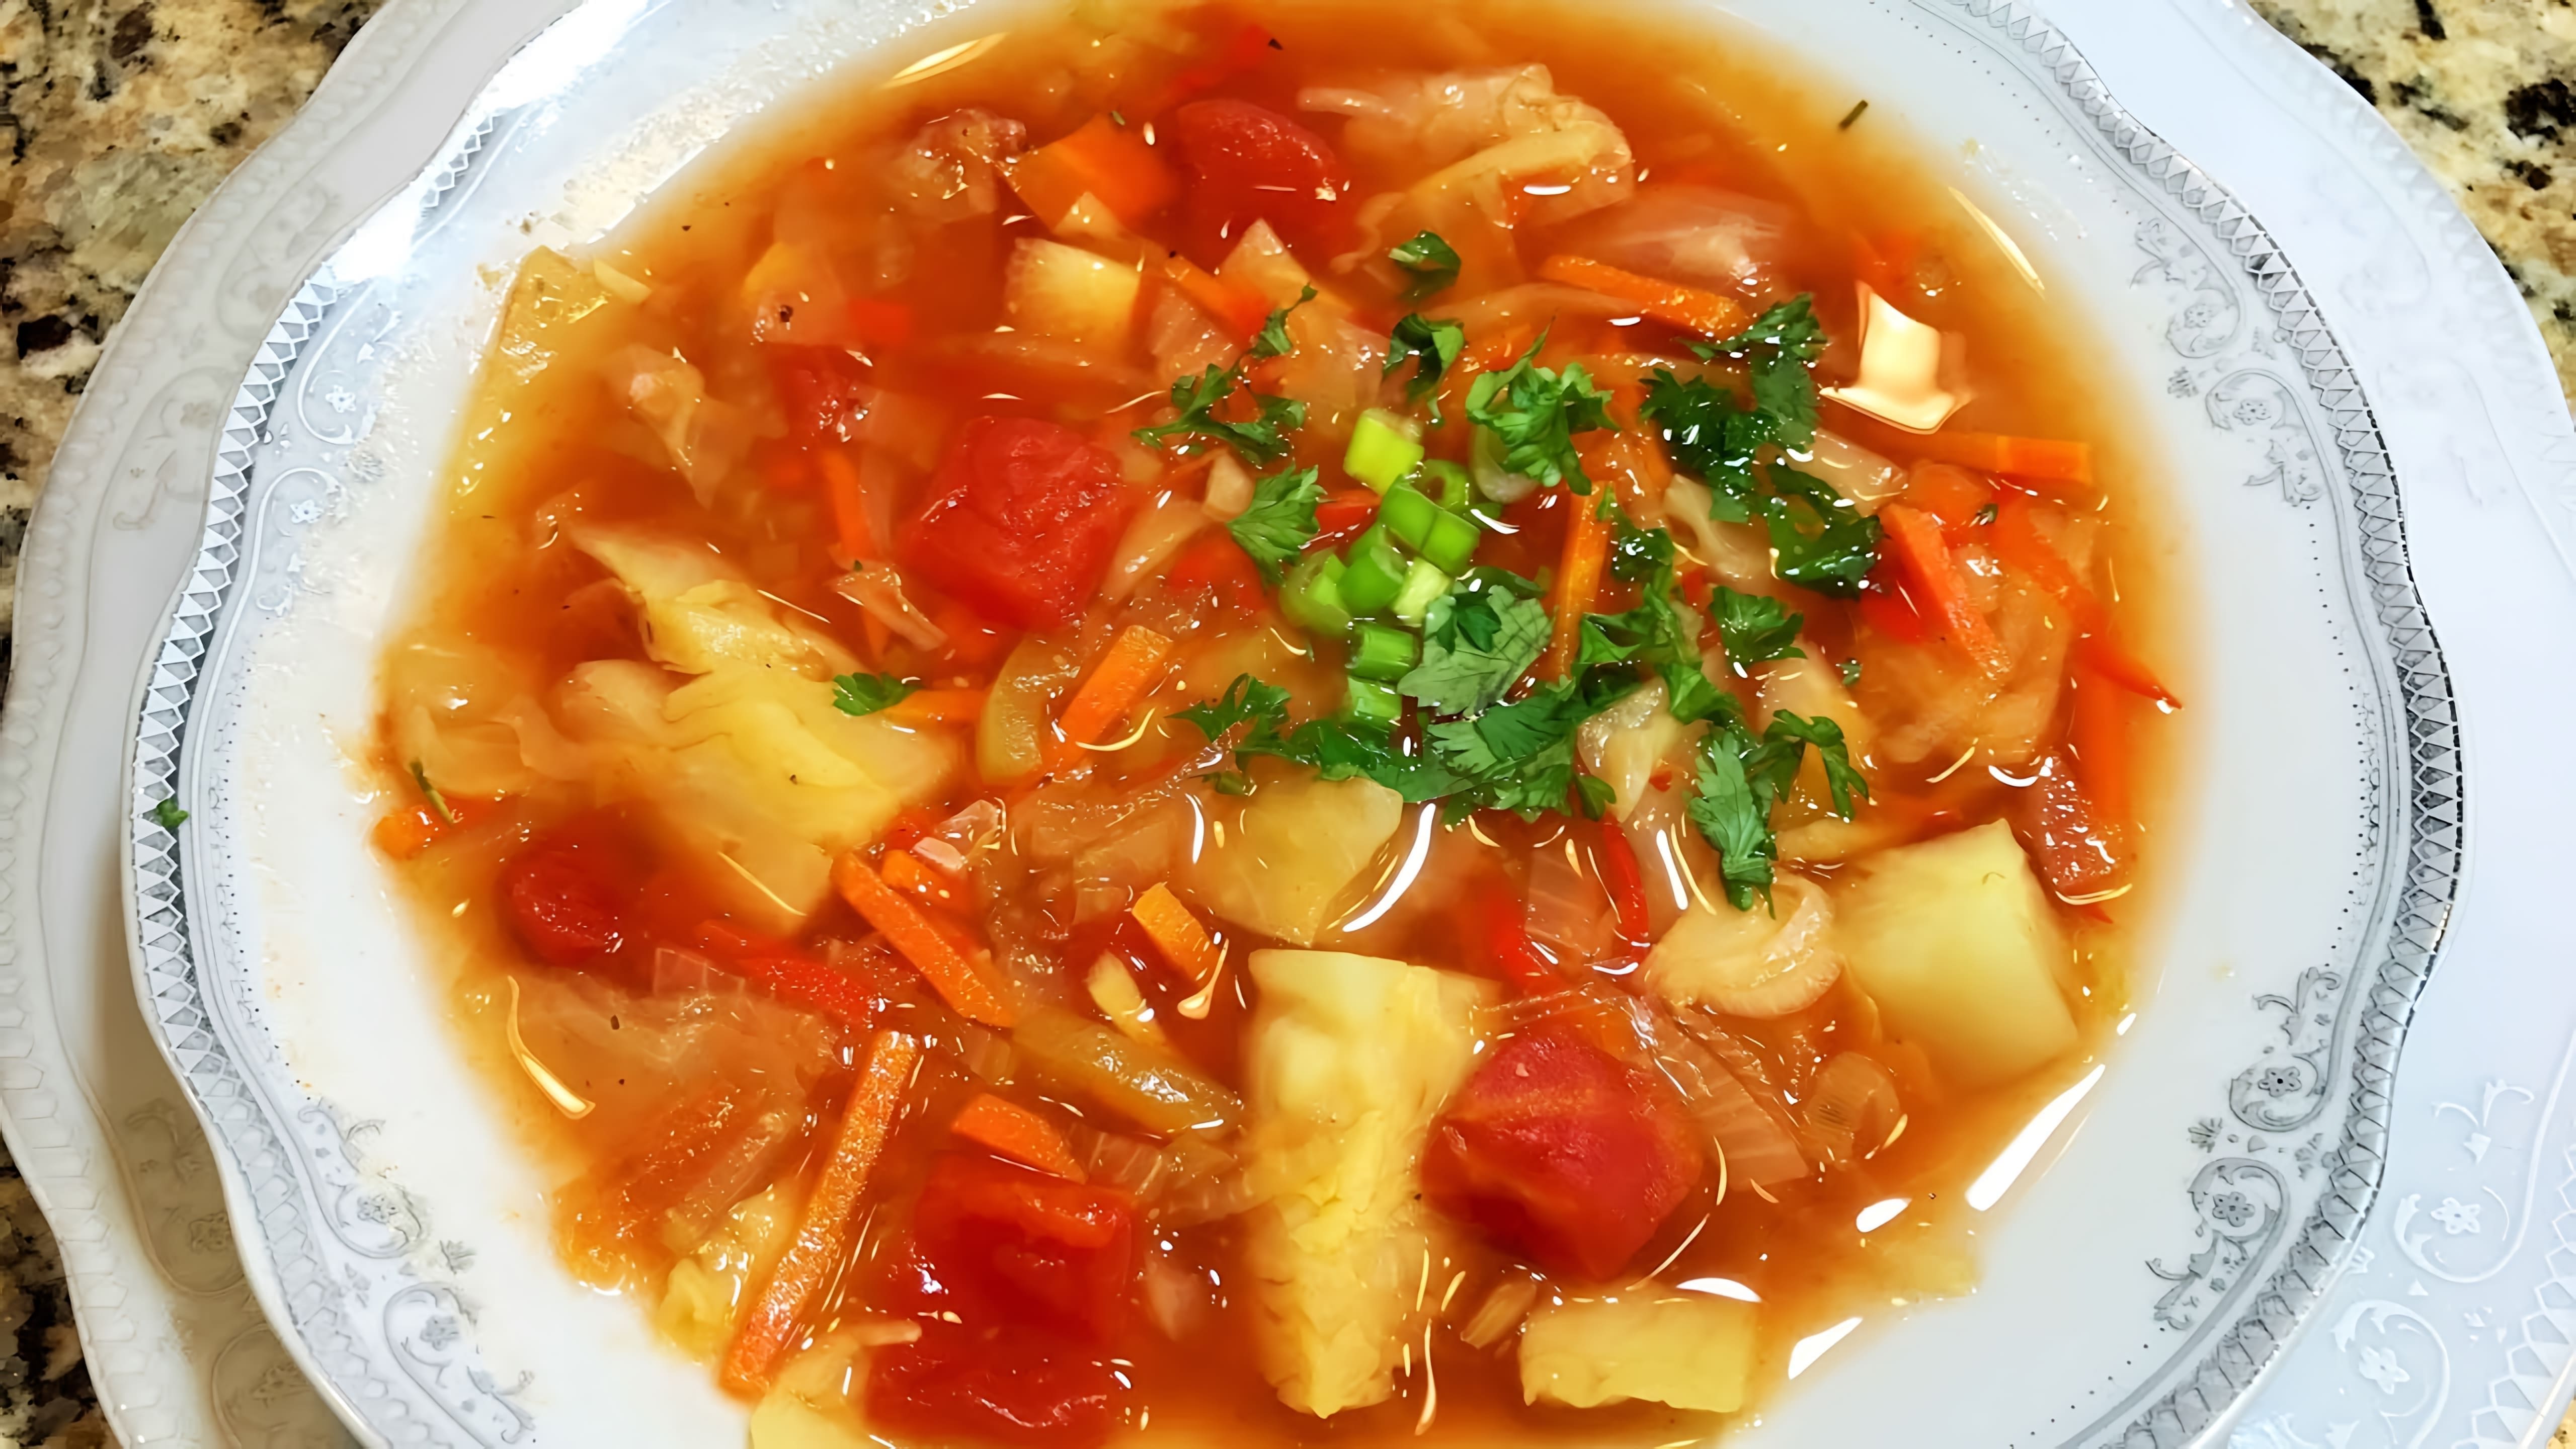 В данном видео демонстрируется рецепт жиросжигающего супа, который можно использовать для проведения разгрузочного дня